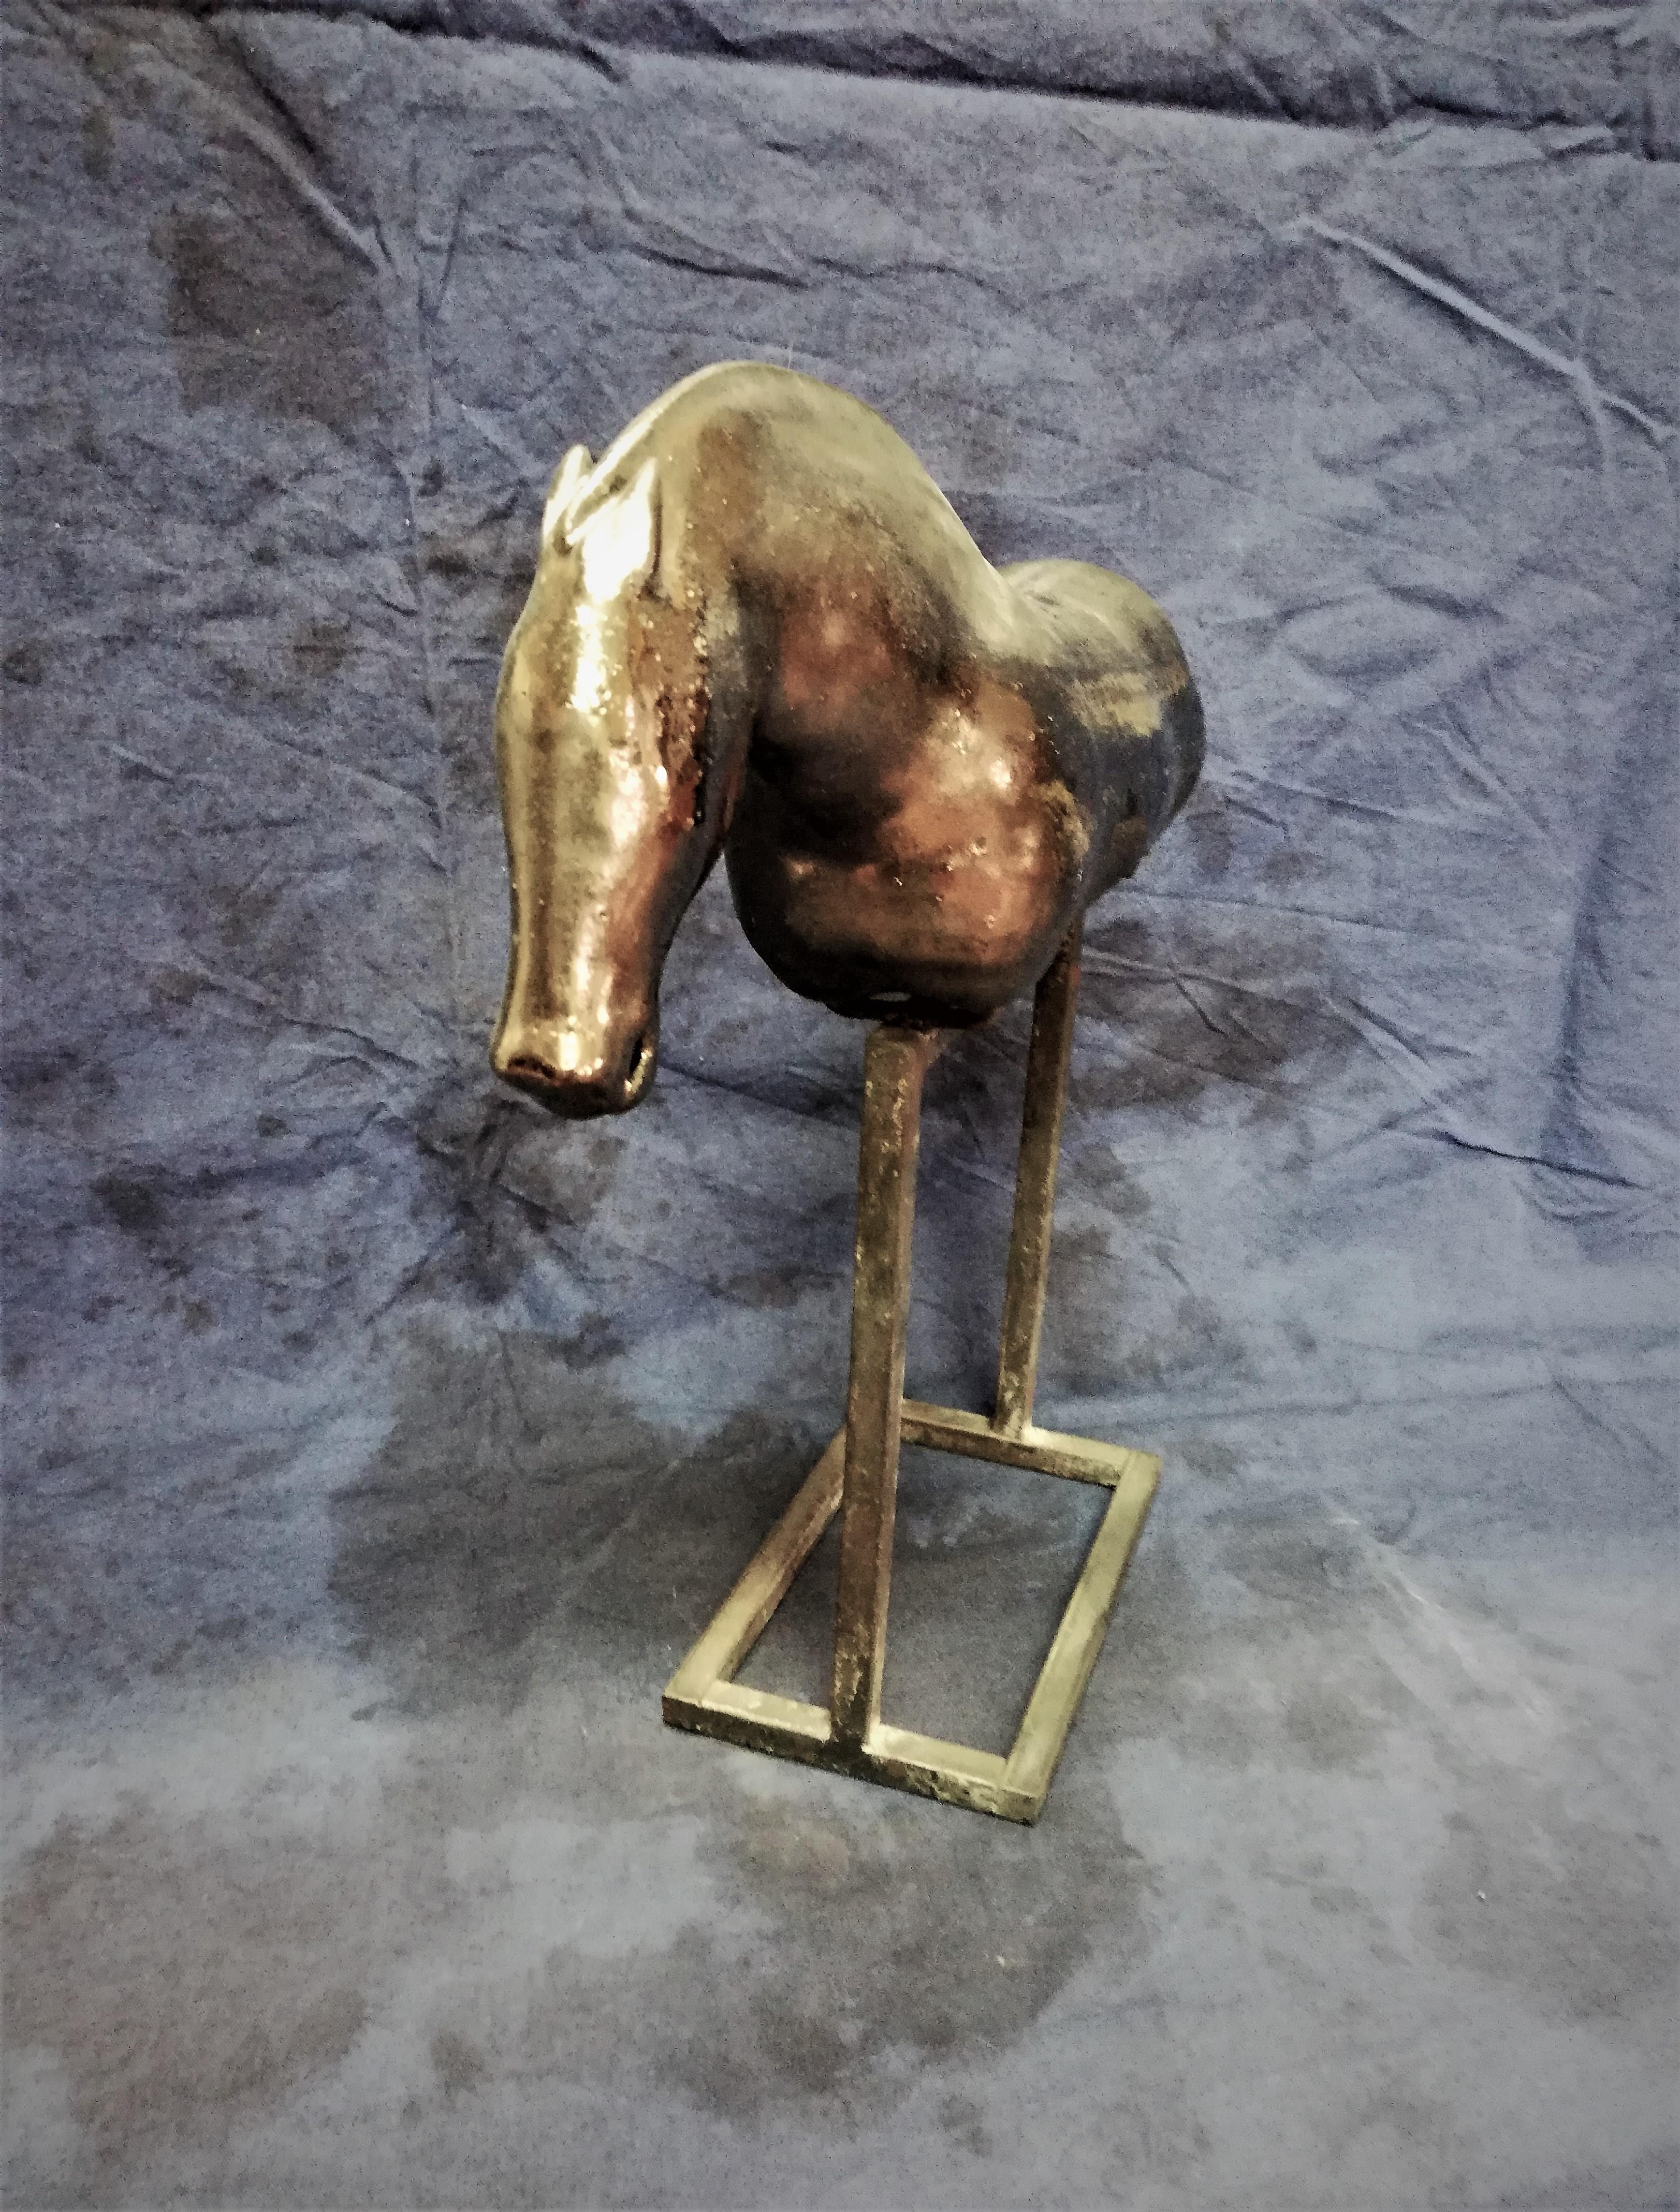 Bogulaw Popowicz, Unique Golden Horse, Welded Ceramic Technique, 32x28x10cm 2019 - Sculpture by Boguslaw Popowicz